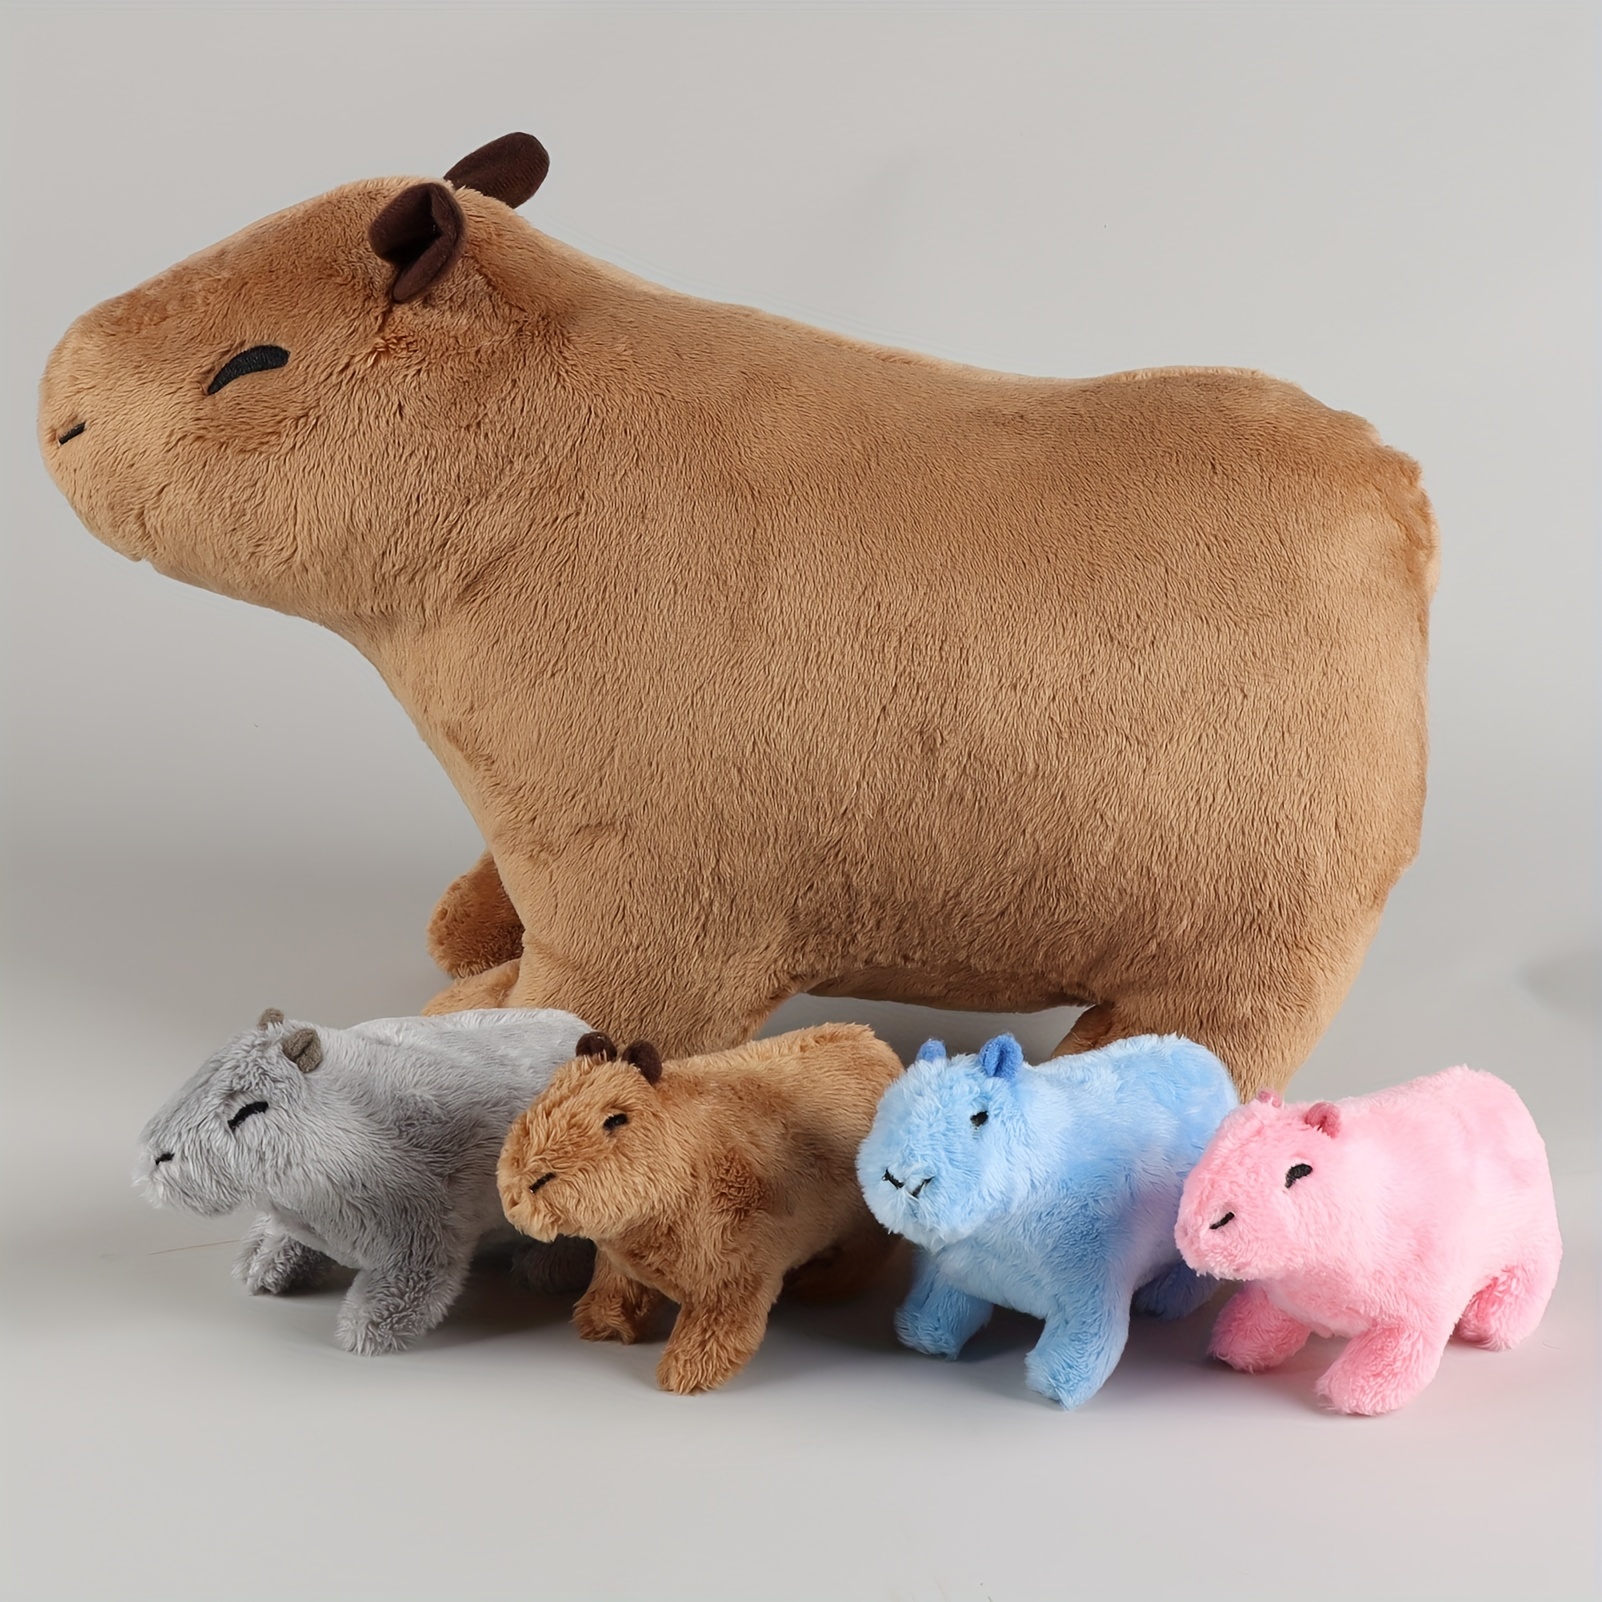 Niedliche Capybara Stofftier puppen elastische Mini kleine Capybara Puppen  entzückende Dekoration Simulation Capybara Spielzeug für Baby geschenke -  AliExpress